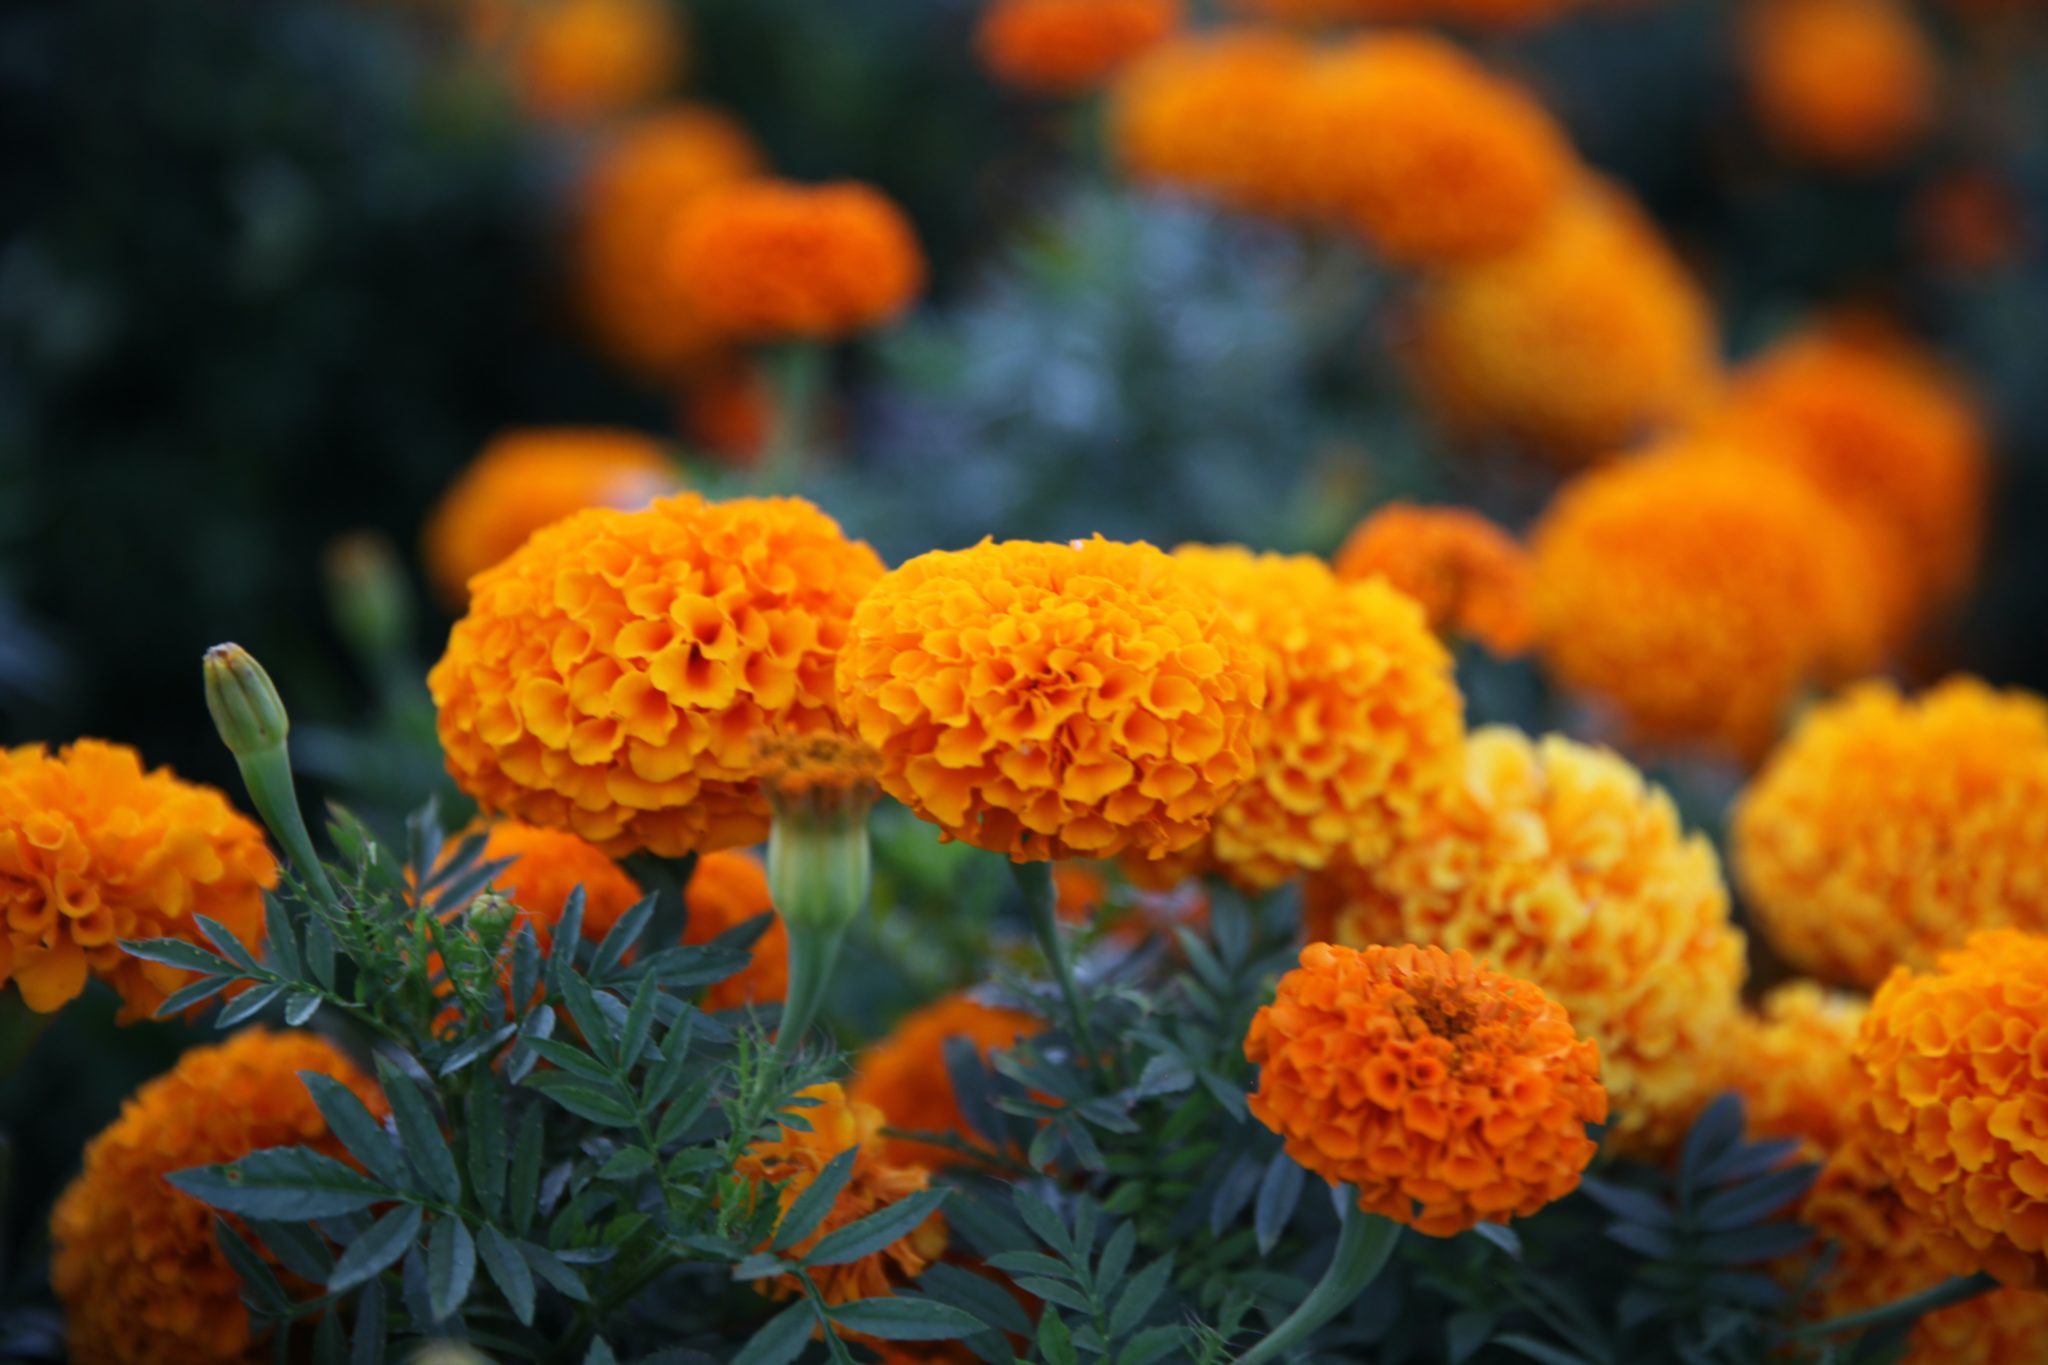 Bright orange and yellow marigolds